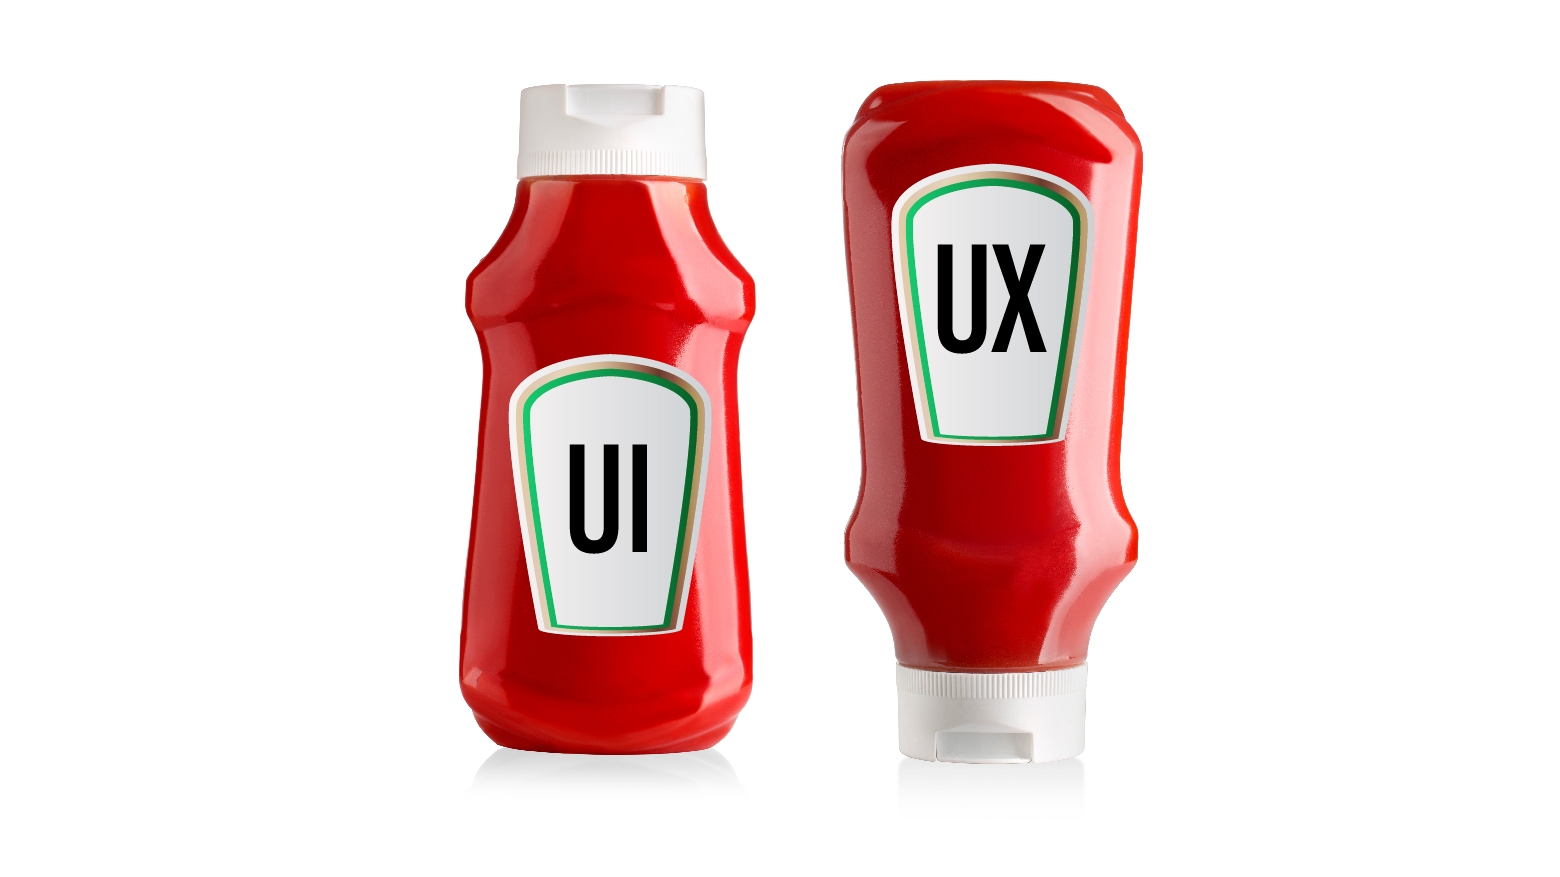 Foto tentang perbedaan UI dan UX 